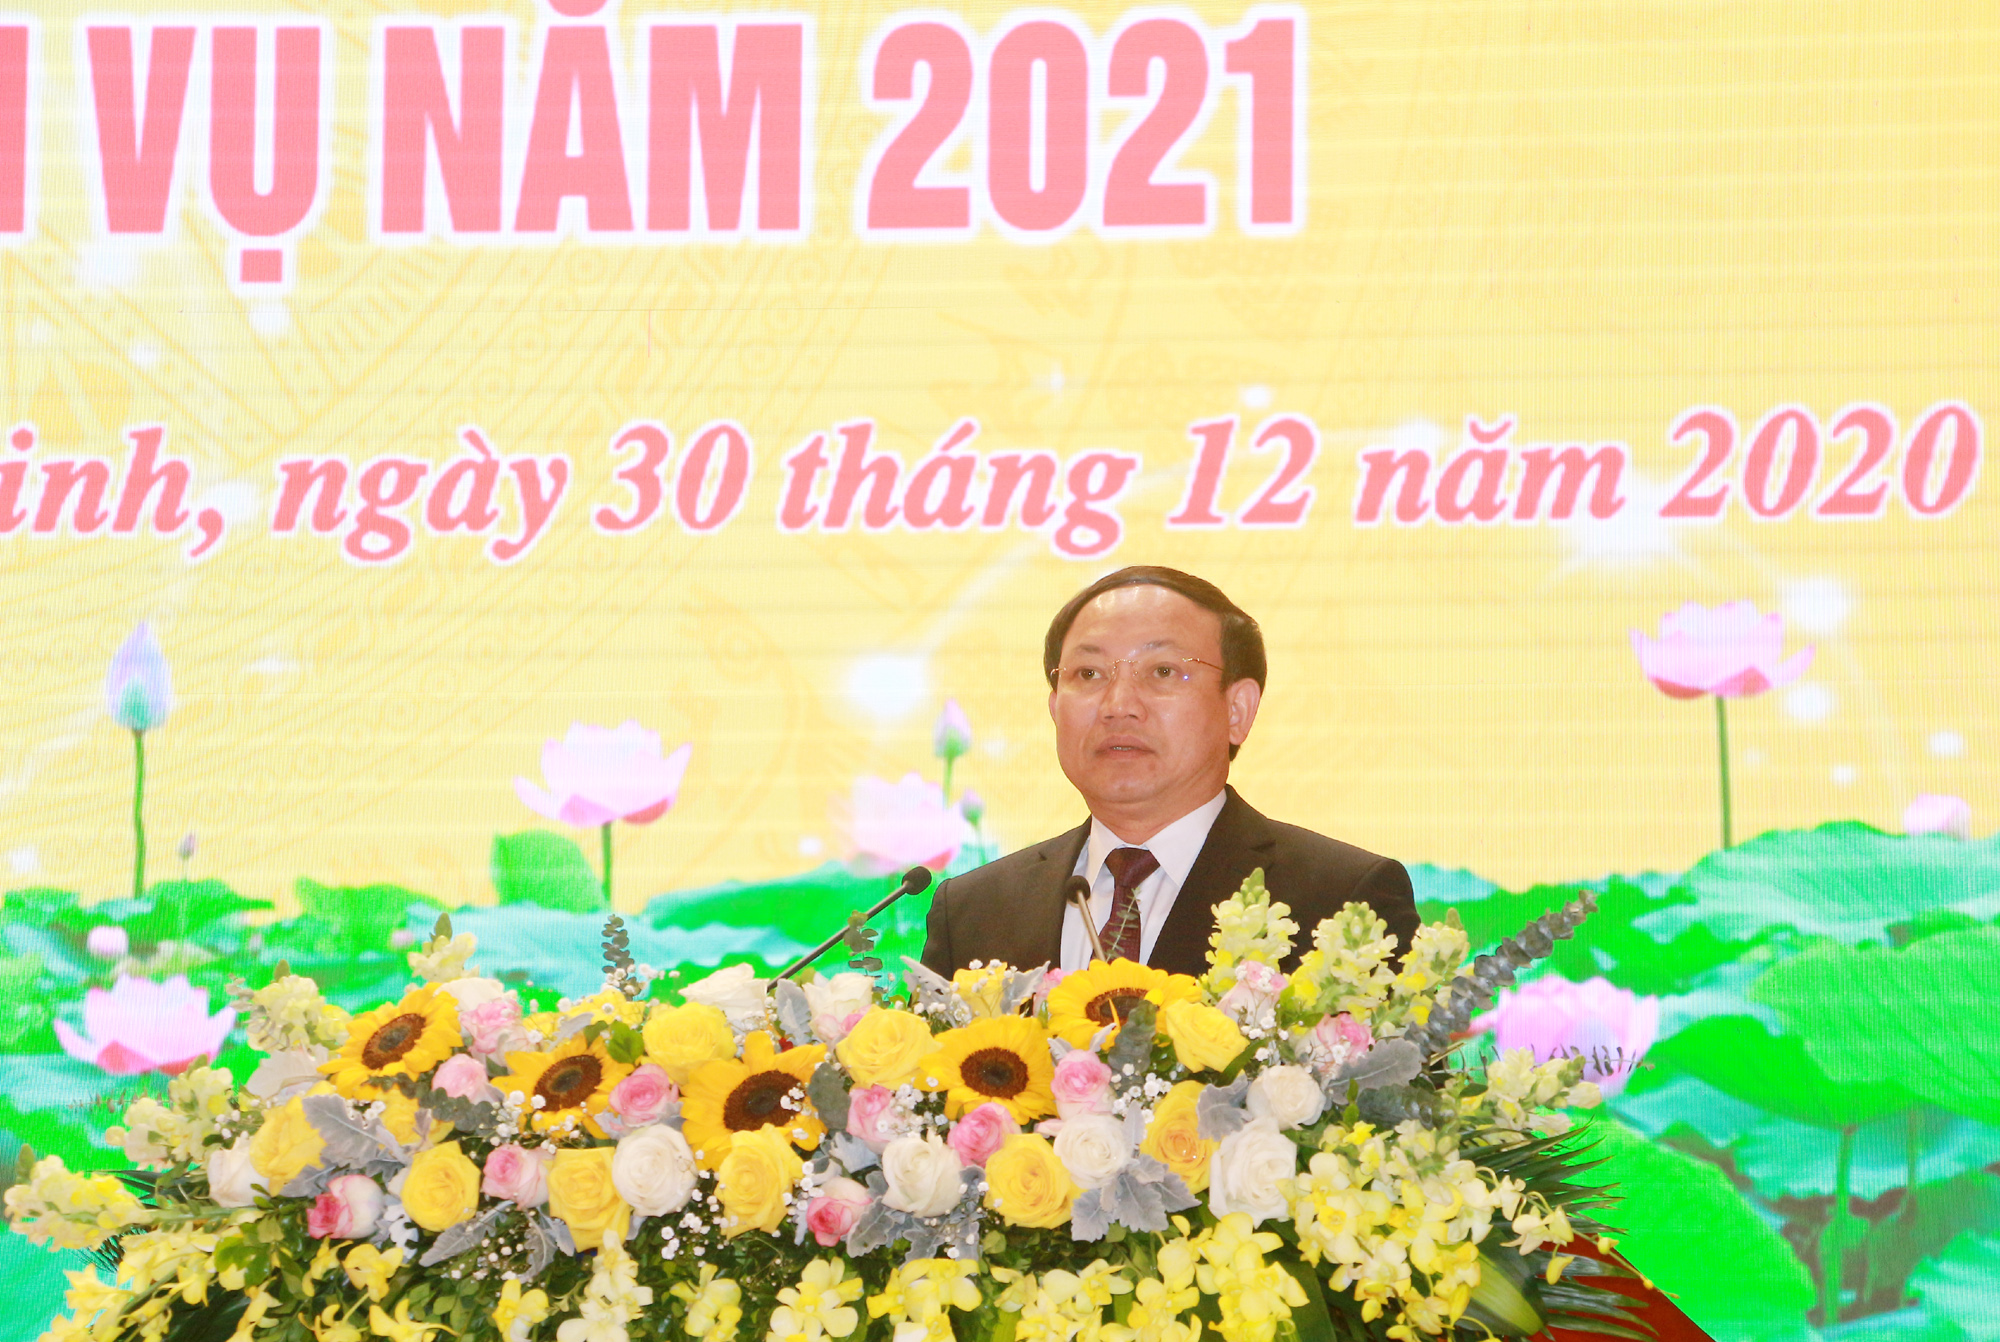 Đồng chí Nguyễn Xuân Ký, Bí thư Tỉnh ủy, Chủ tịch HĐND tỉnh, phát biểu tại Hội nghị.